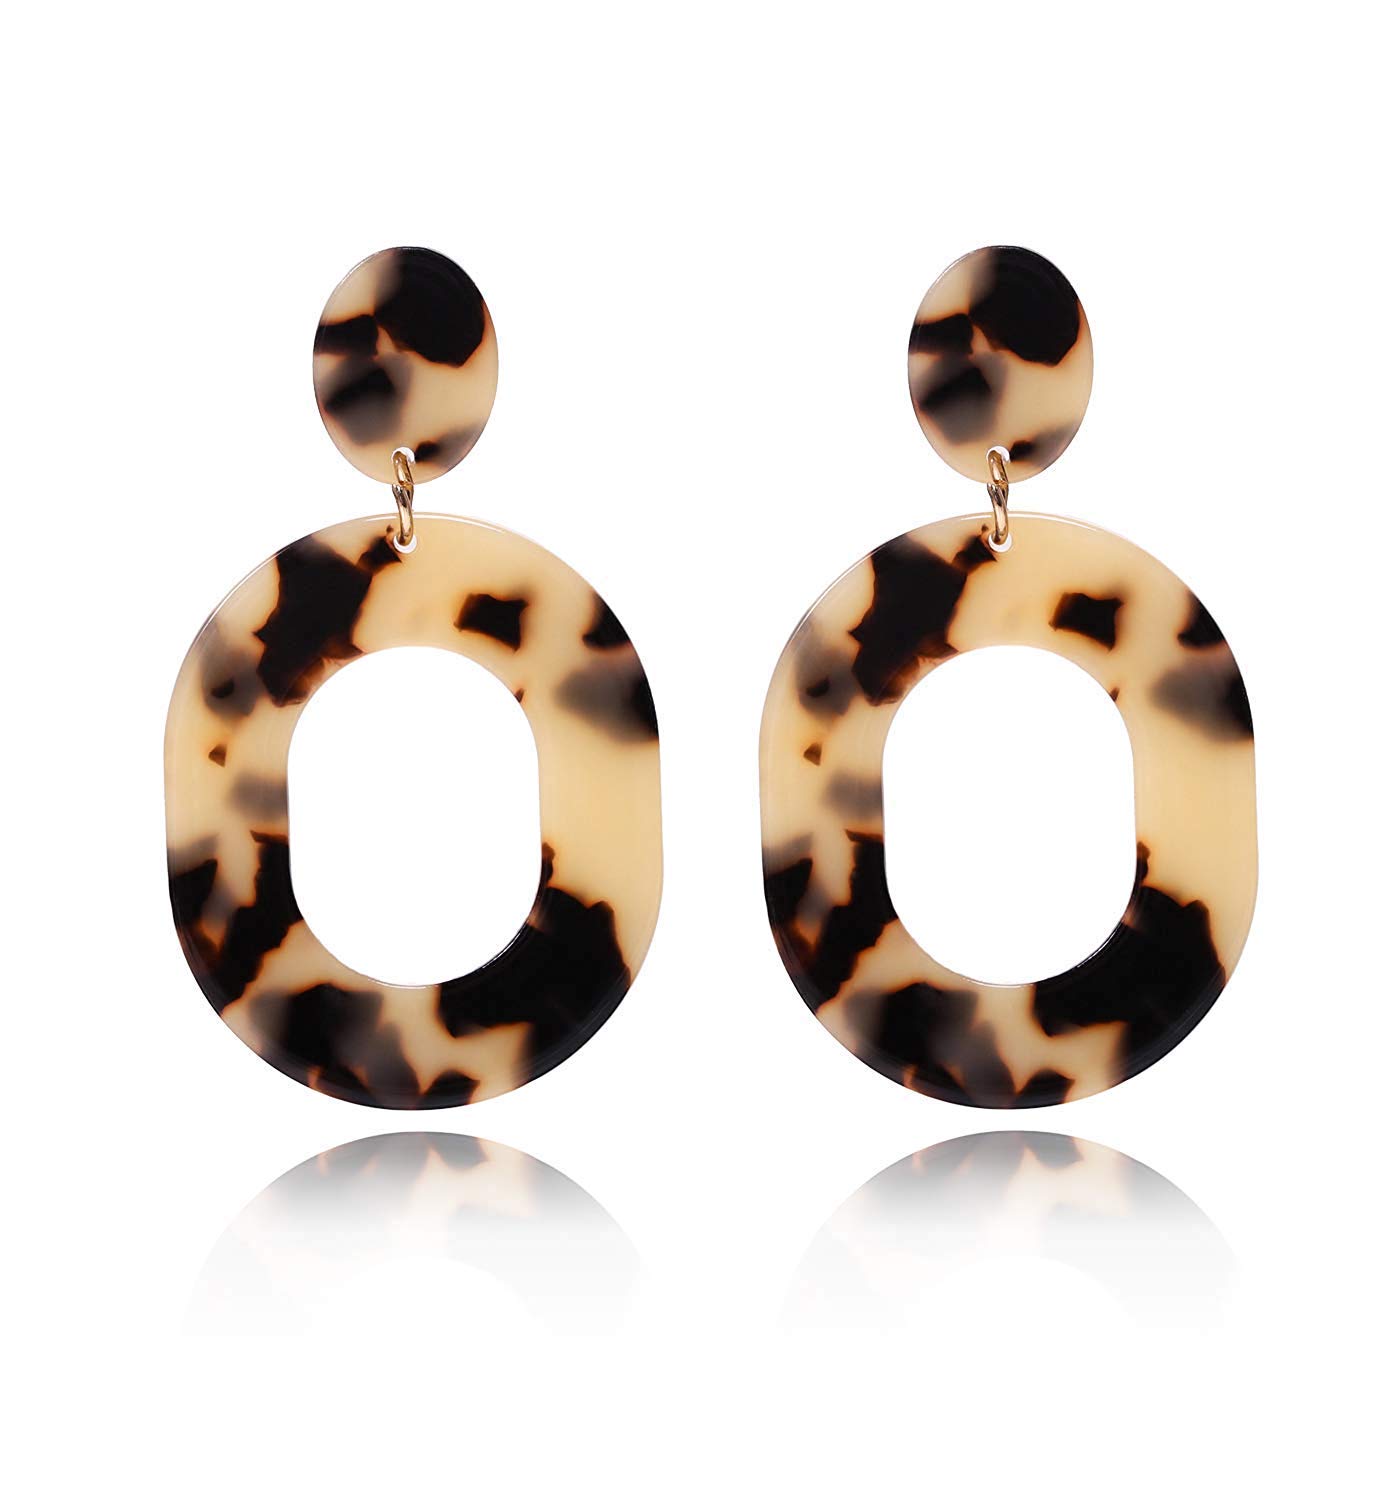 Acrylic Earrings For Women Girls Statement Geometric Earrings Resin Acetate Drop Dangle Earrings Mottled Hoop Earrings Fashion Jewelry